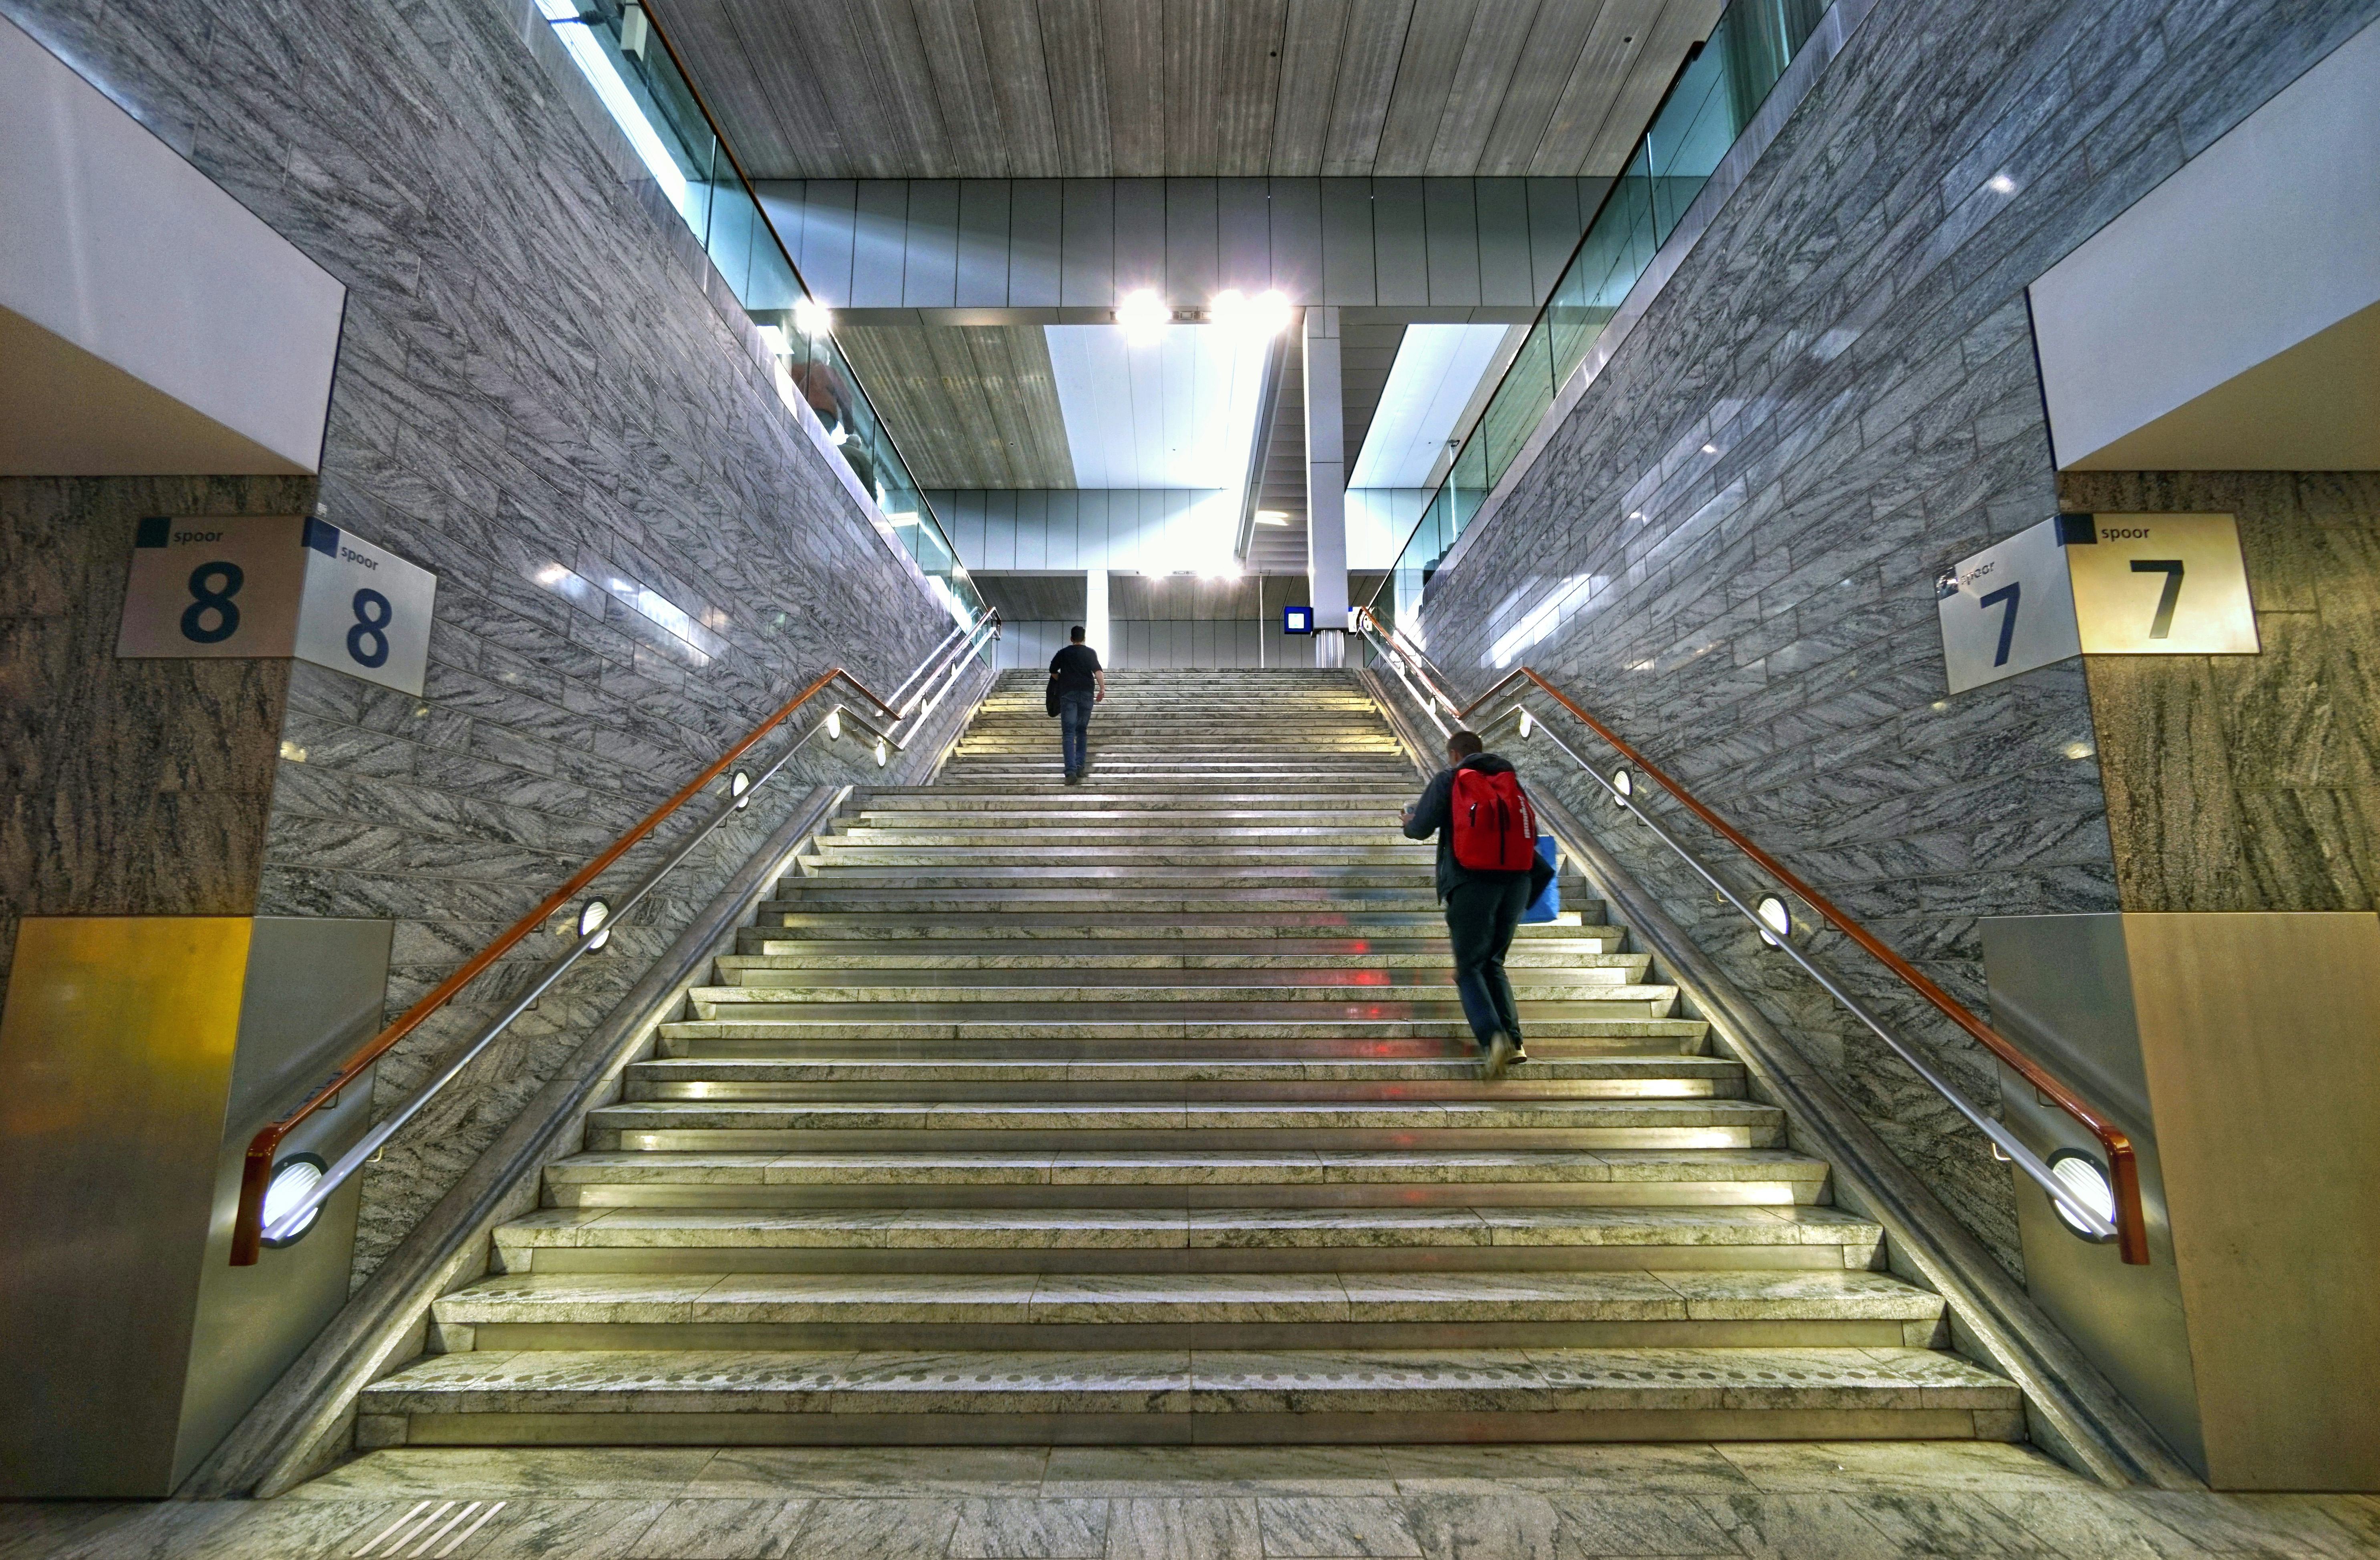 Nederland, Breda, 7-4-2019 
In het station van Breda .Glanzende trappartij, ontwerp van Koen van Velsen .
Foto: Flip Franssen